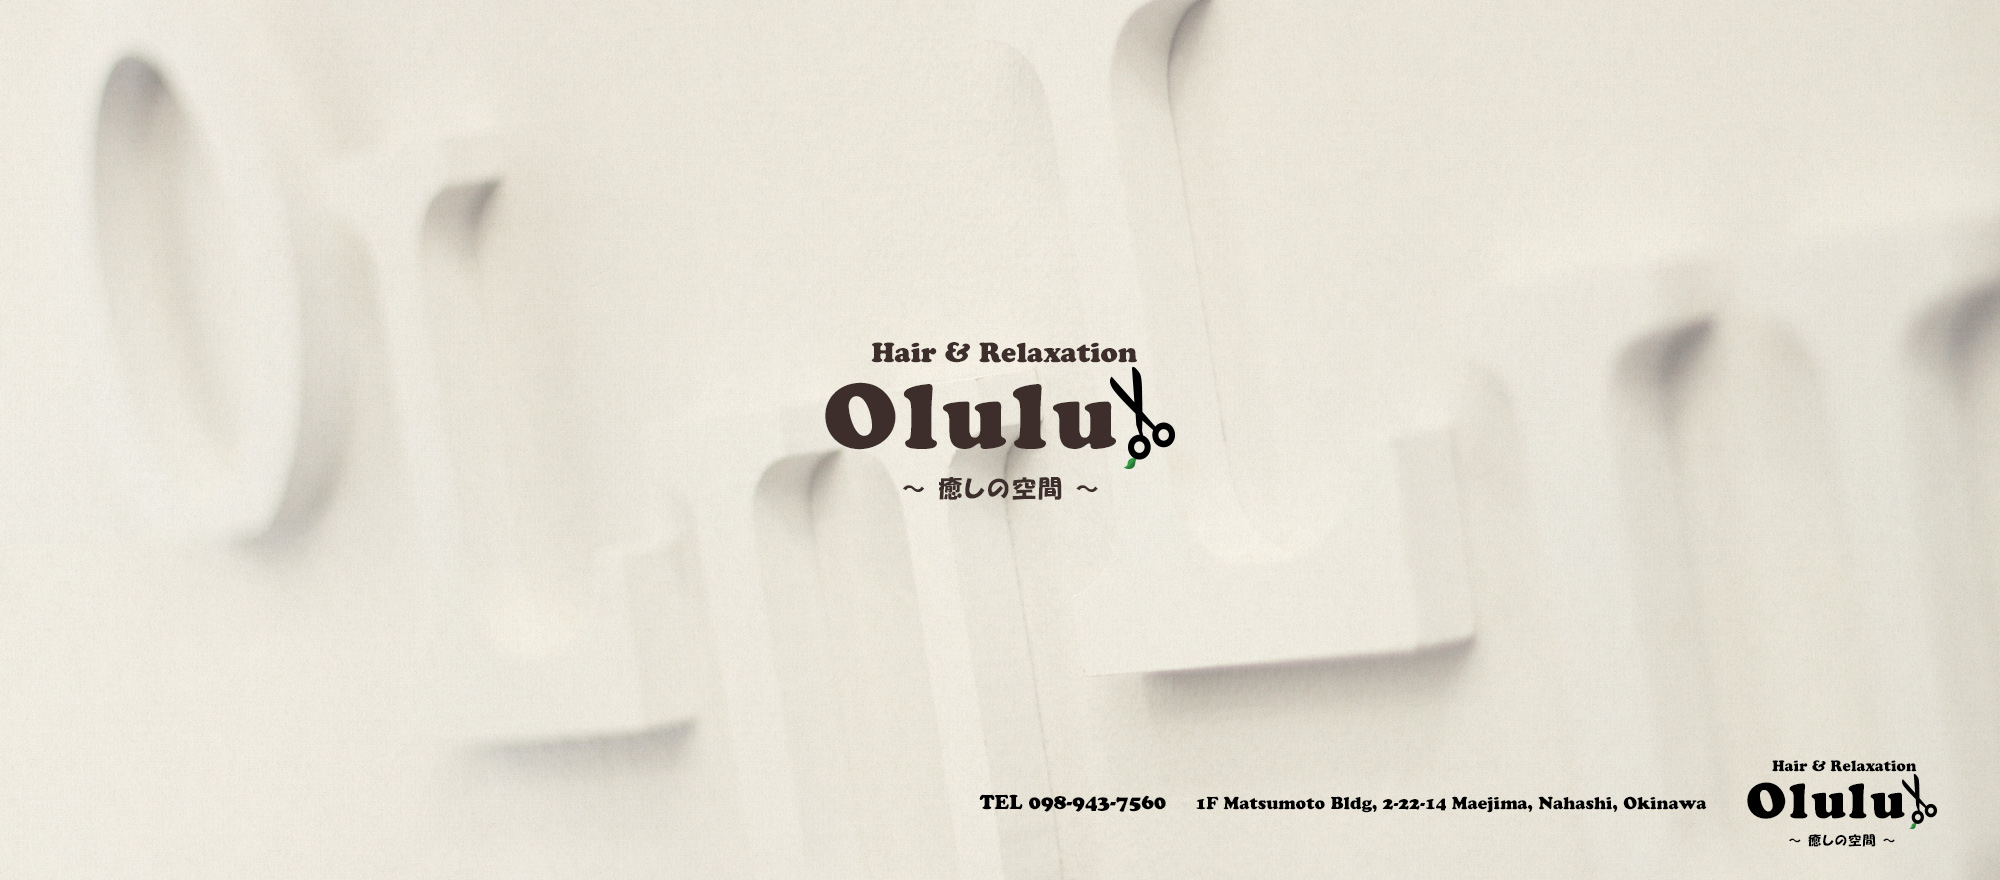 Hair&Relaxation Olulu